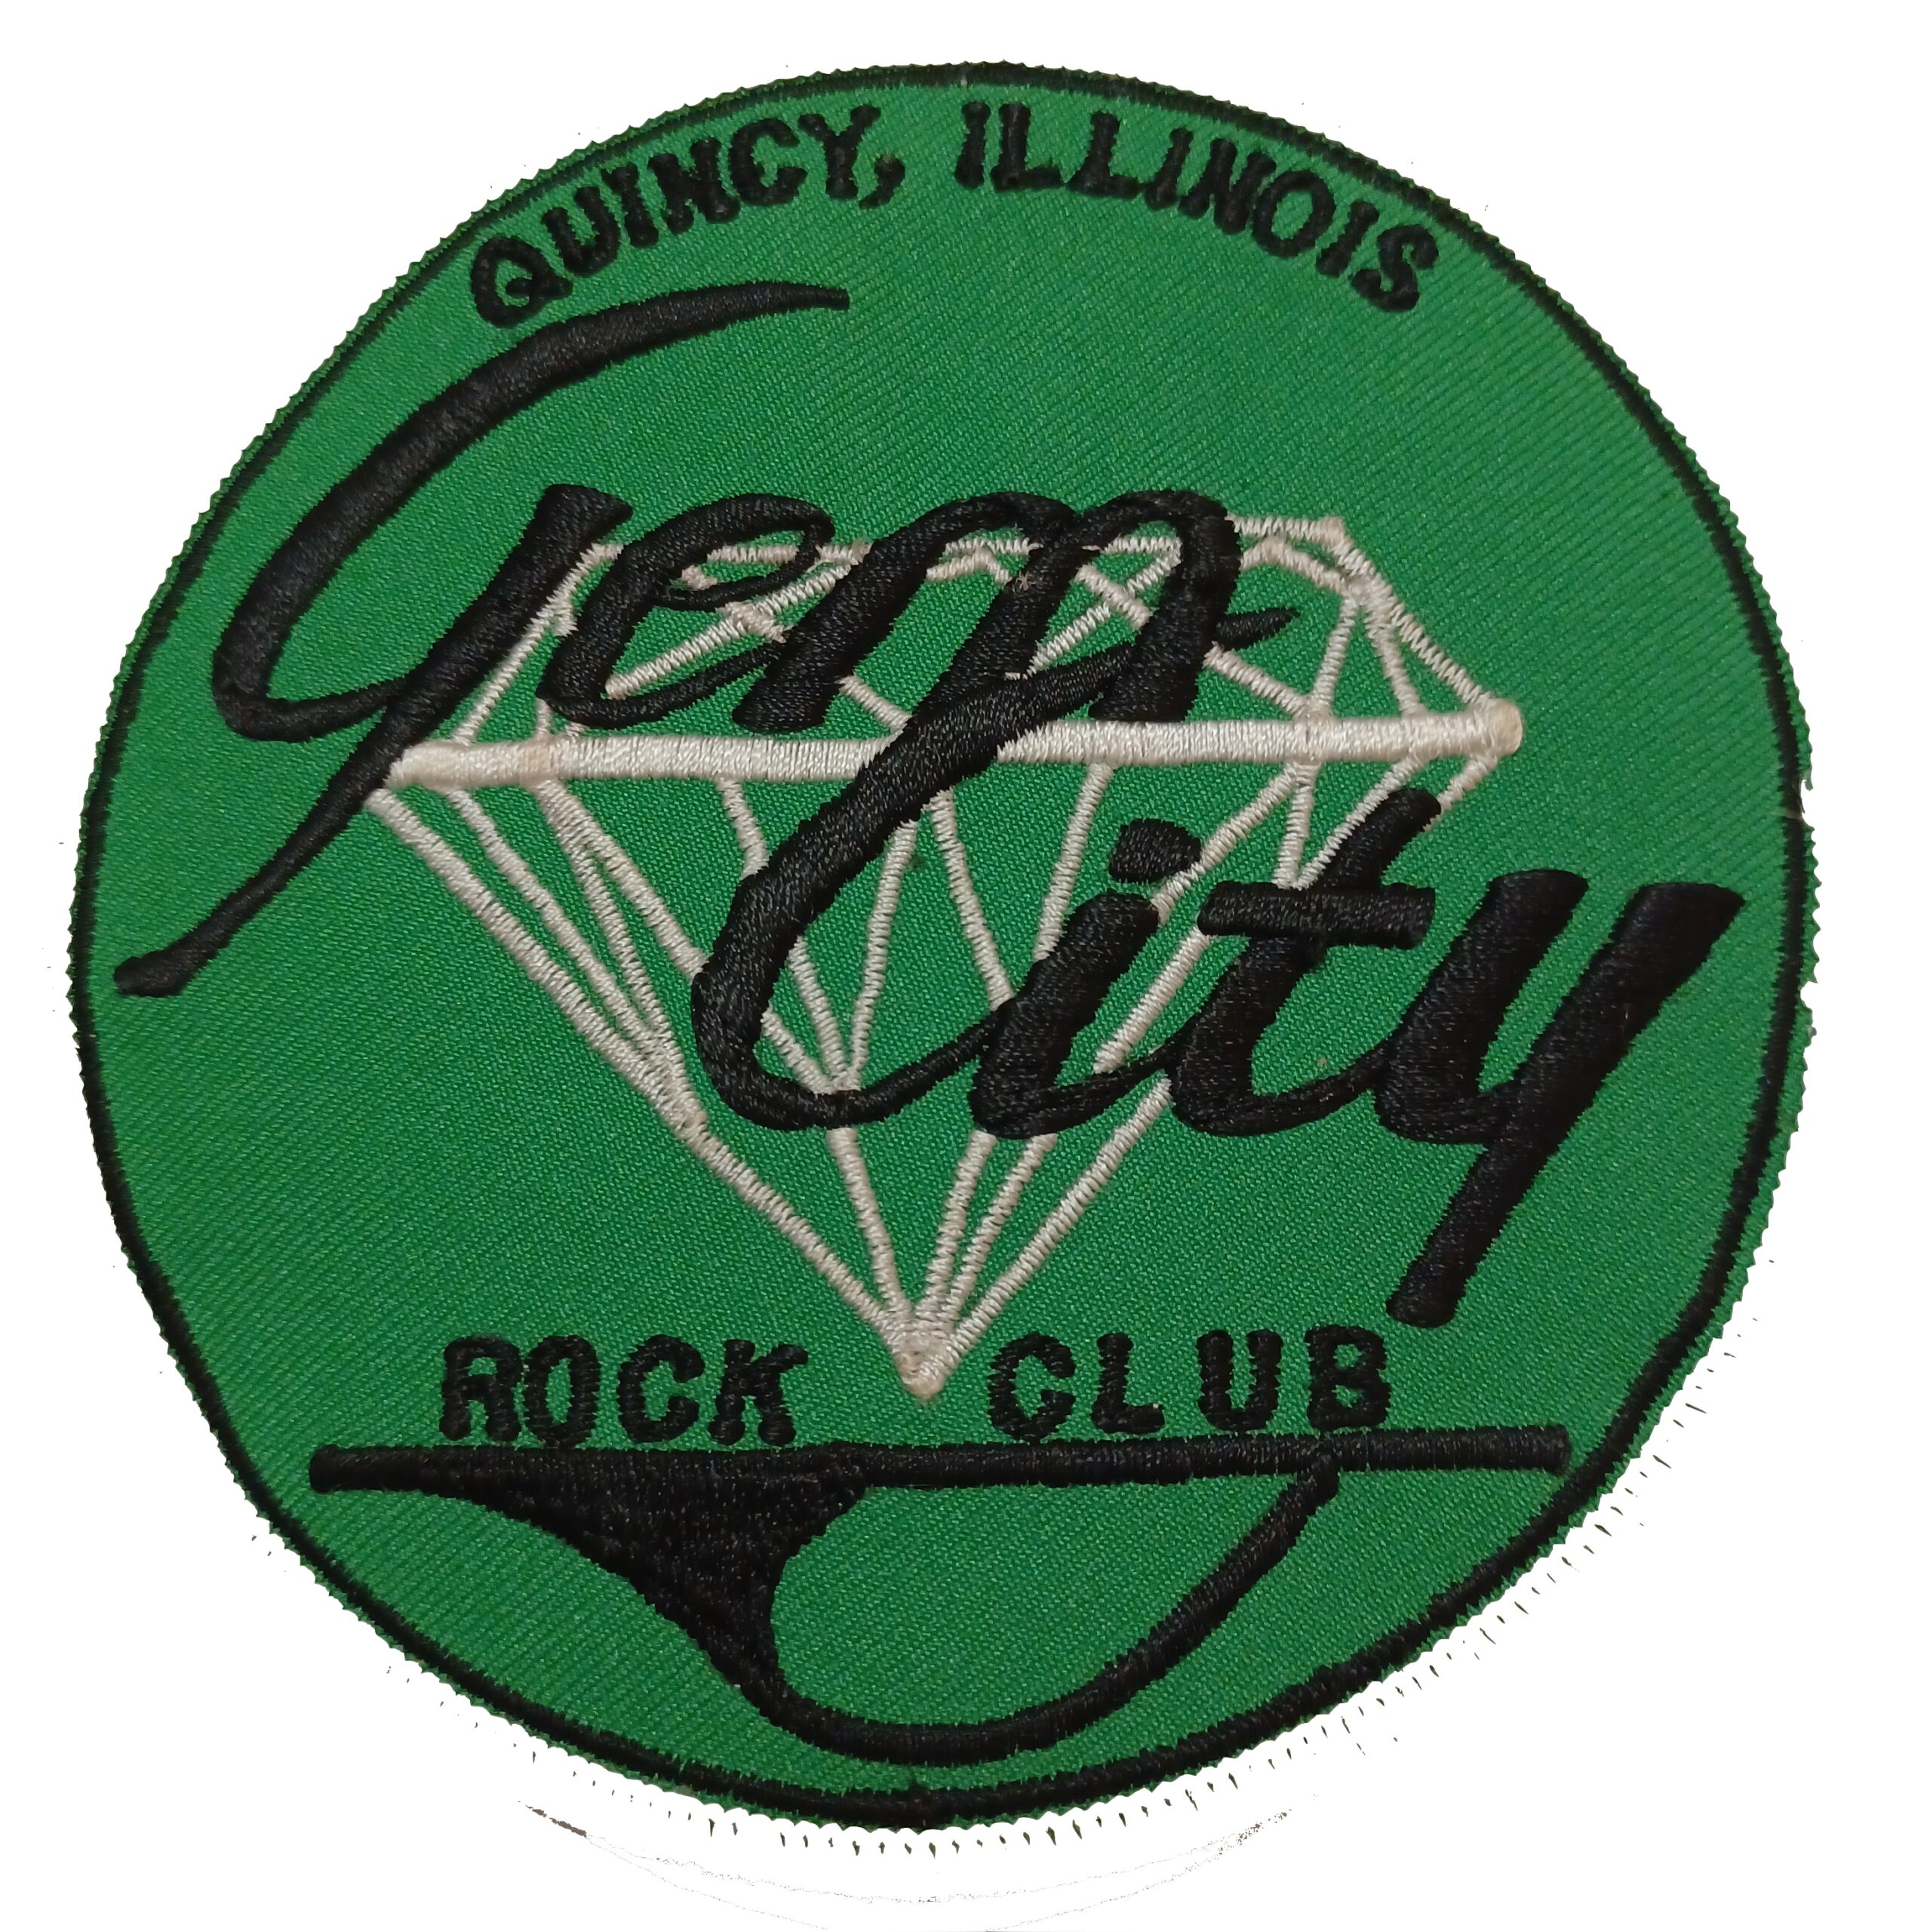 Gem City Rock Club logo